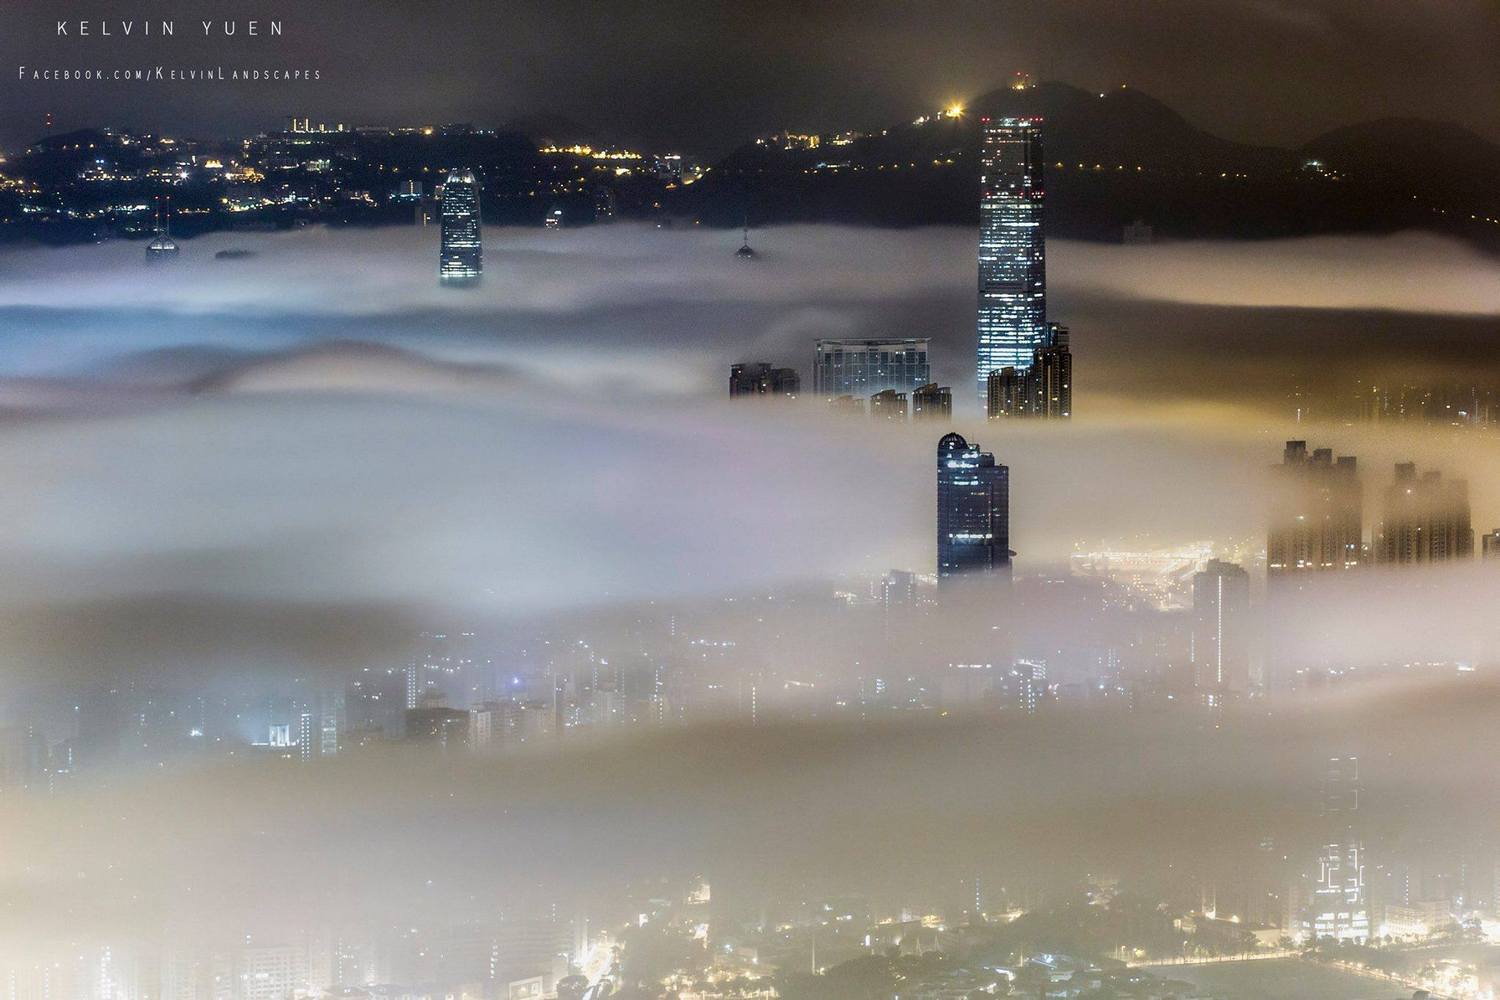 〈在夢中的一夜〉入選「佳作」名單，香港摩天大樓在濃霧中探頭昂首，猶如海市蜃樓般的仙境。